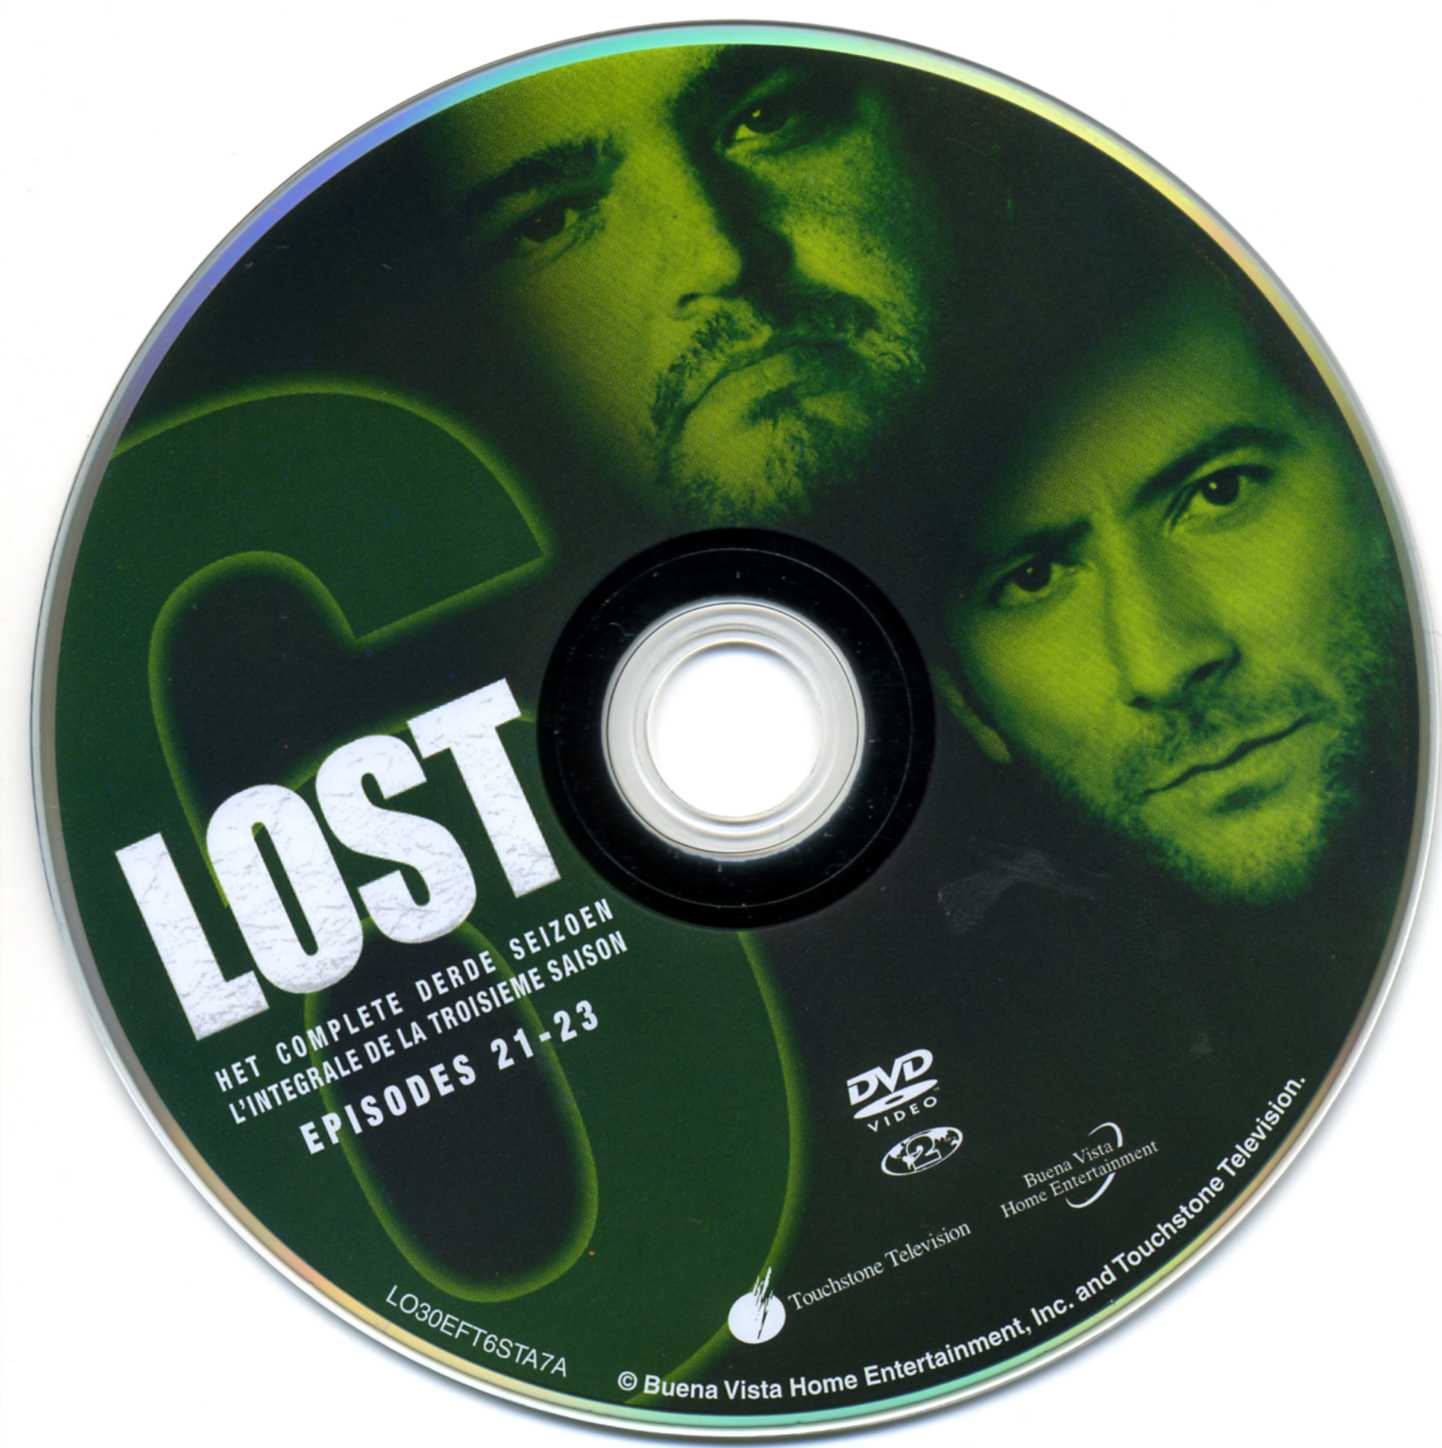 Lost Saison 3 DVD 6